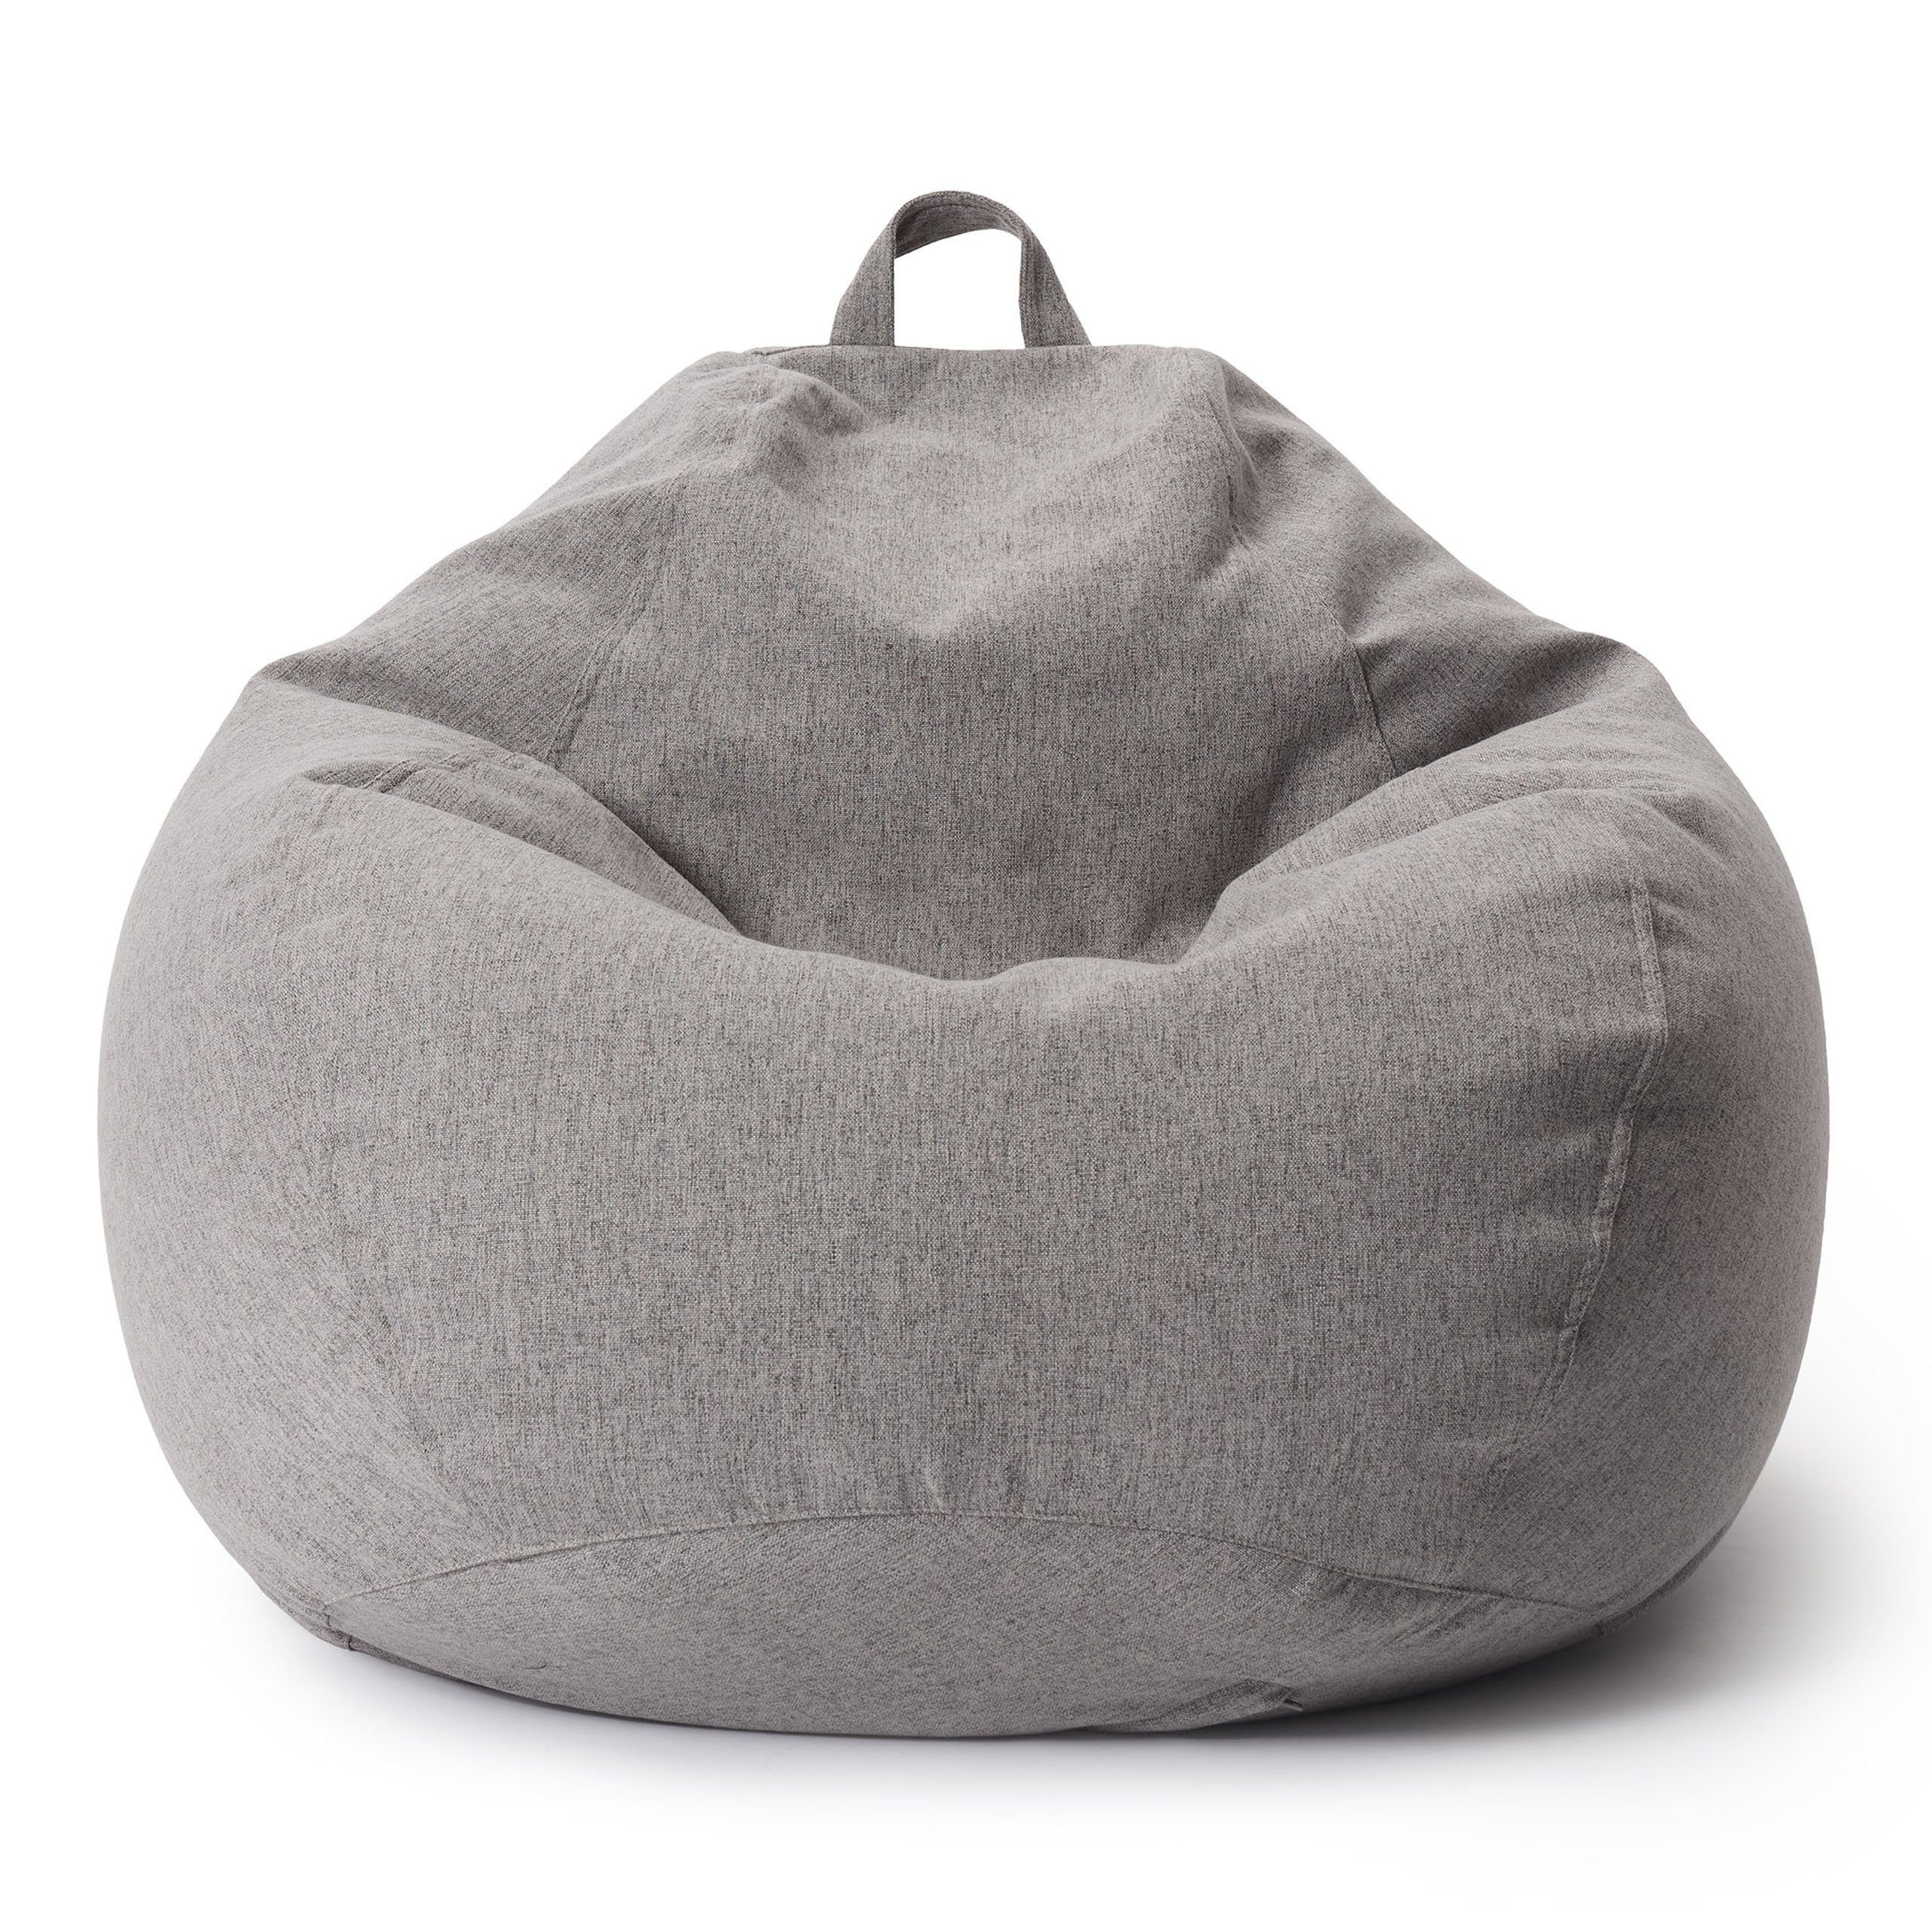 Lumaland Sitzsack »Comfort Line XXL«, Indoor 100x120x50 cm extrem weich und  robust Bodenkissen Bean Bag Chair ideal für Kinder und Erwachsene Hellgrau  online kaufen | OTTO